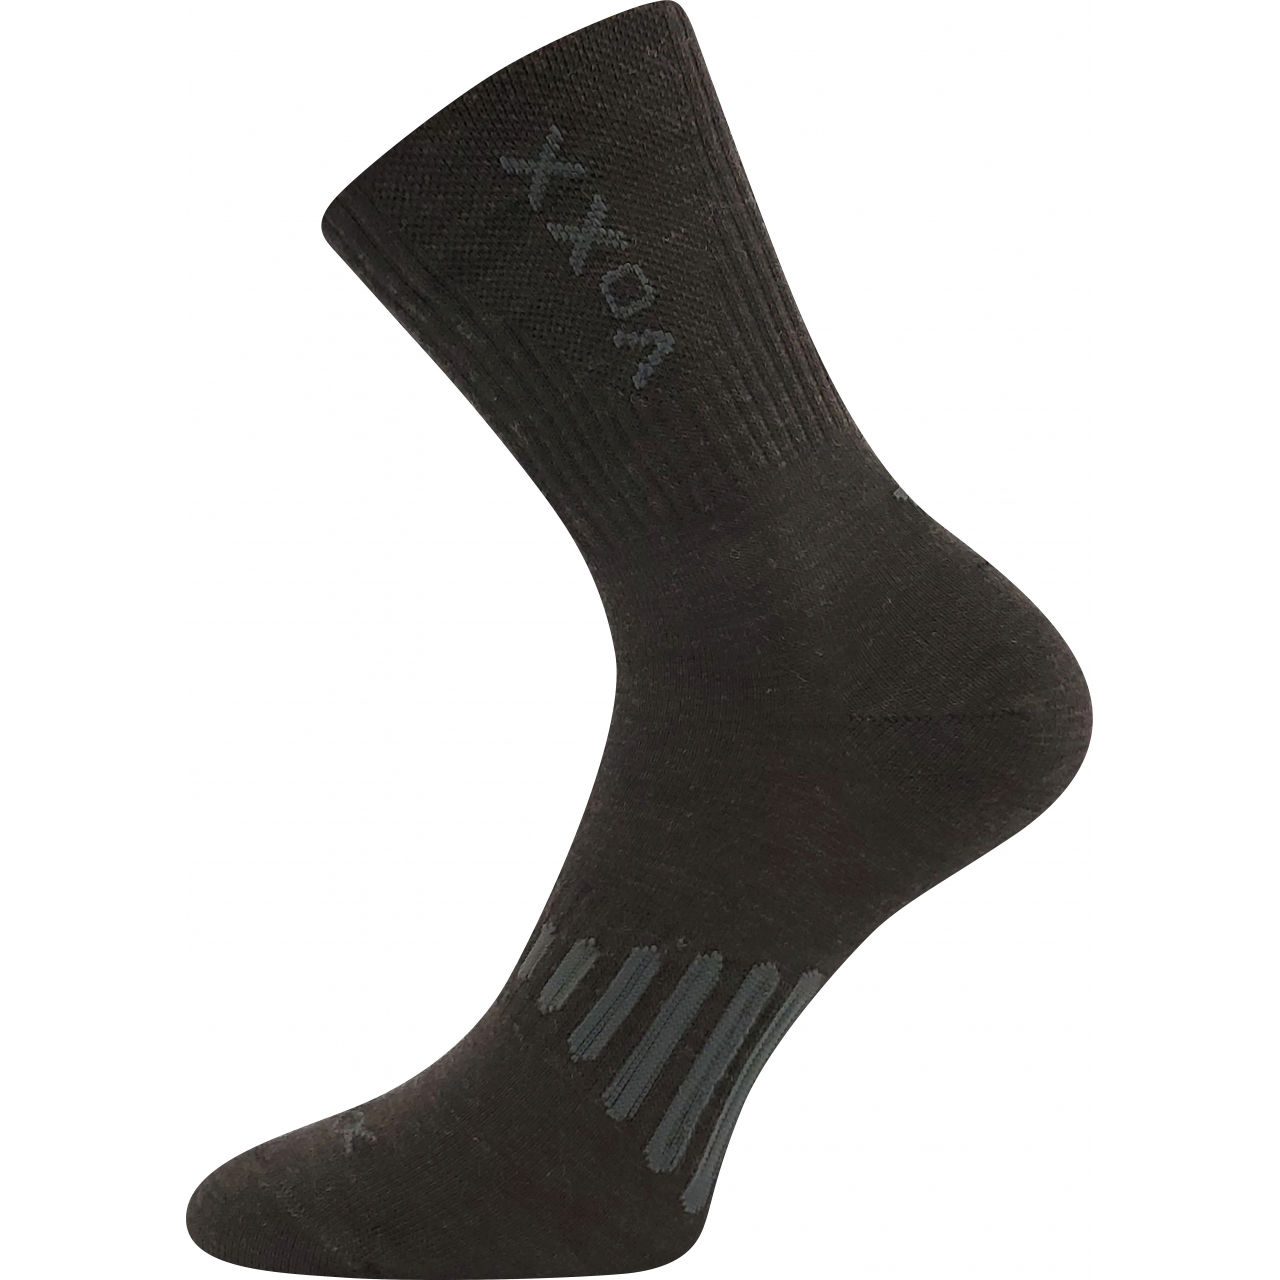 Ponožky unisex sportovní Voxx Powrix - hnědé, 43-46